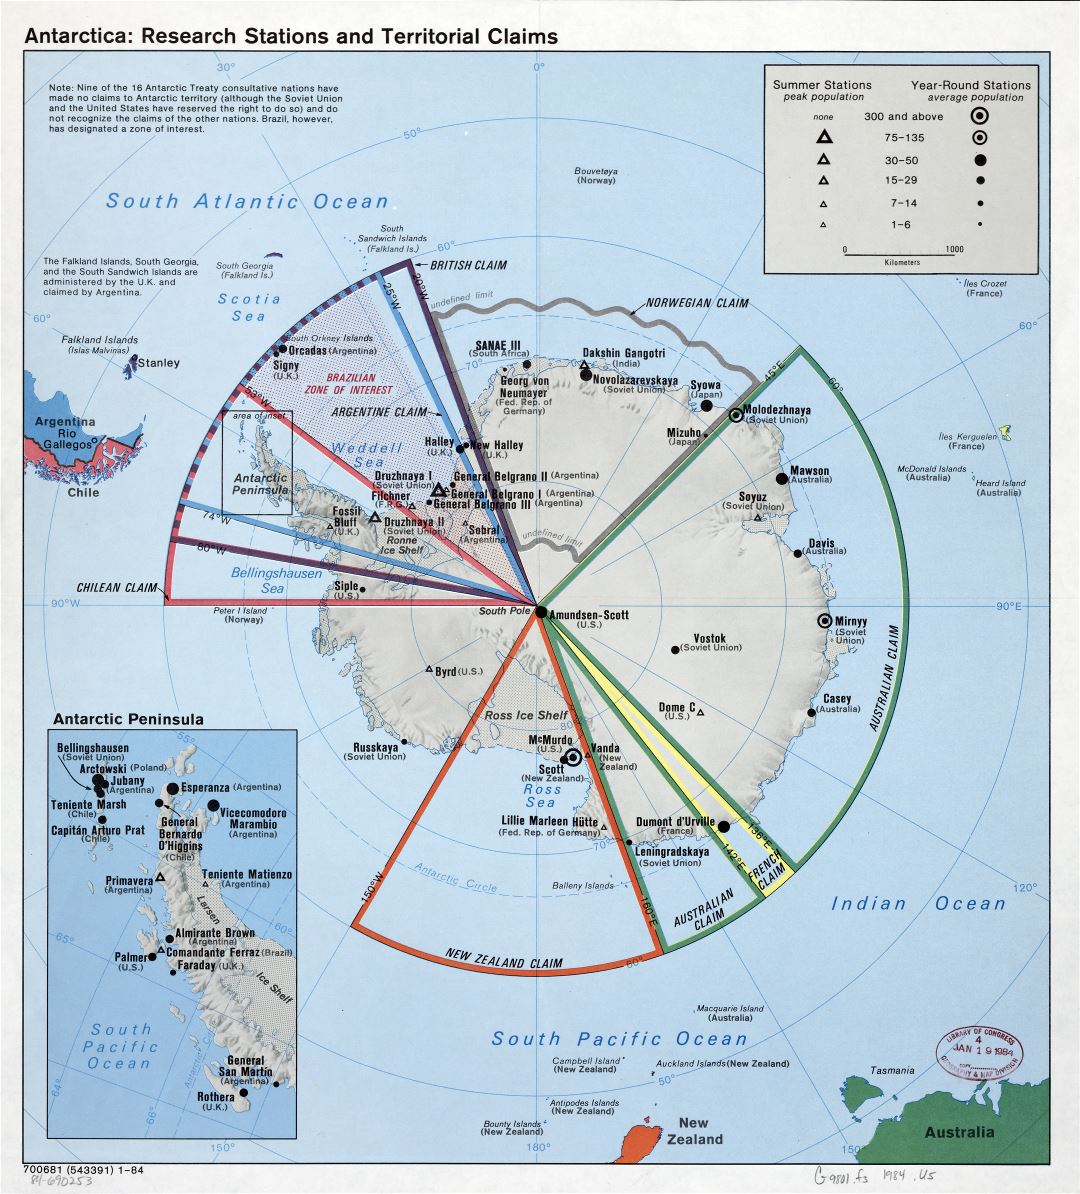 Mapa a gran escala de las estaciones de investigación de la Antártida y reivindicaciones territoriales - 1984